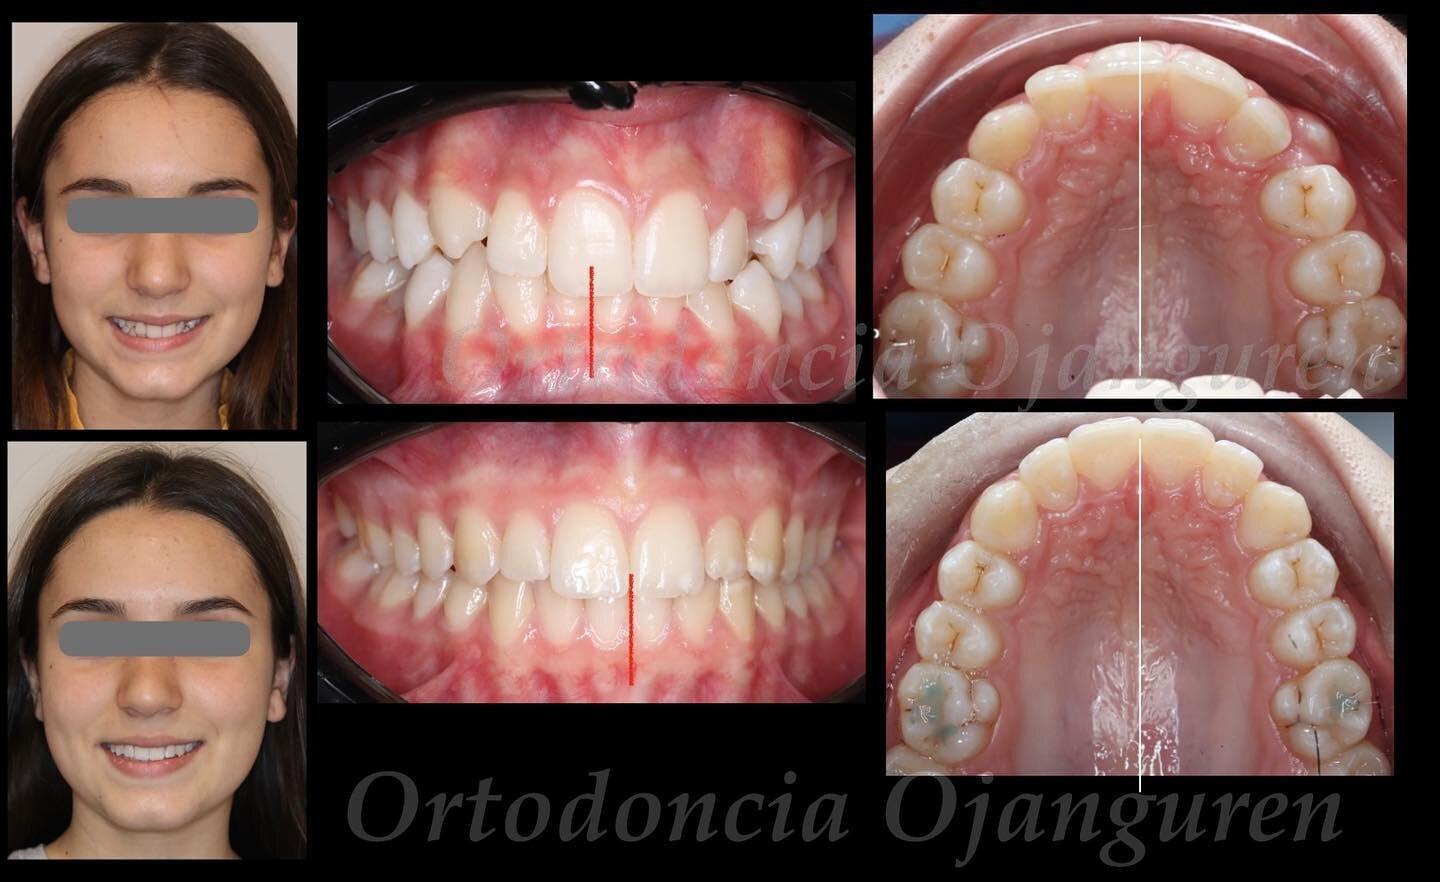 Desviaci&oacute;n por falta de espacio de erupci&oacute;n 🔆

.
.
#ortodonciaojanguren #ojanguren #ortodonciainvisible #ortodoncialogro&ntilde;o #braces #smile #alignment